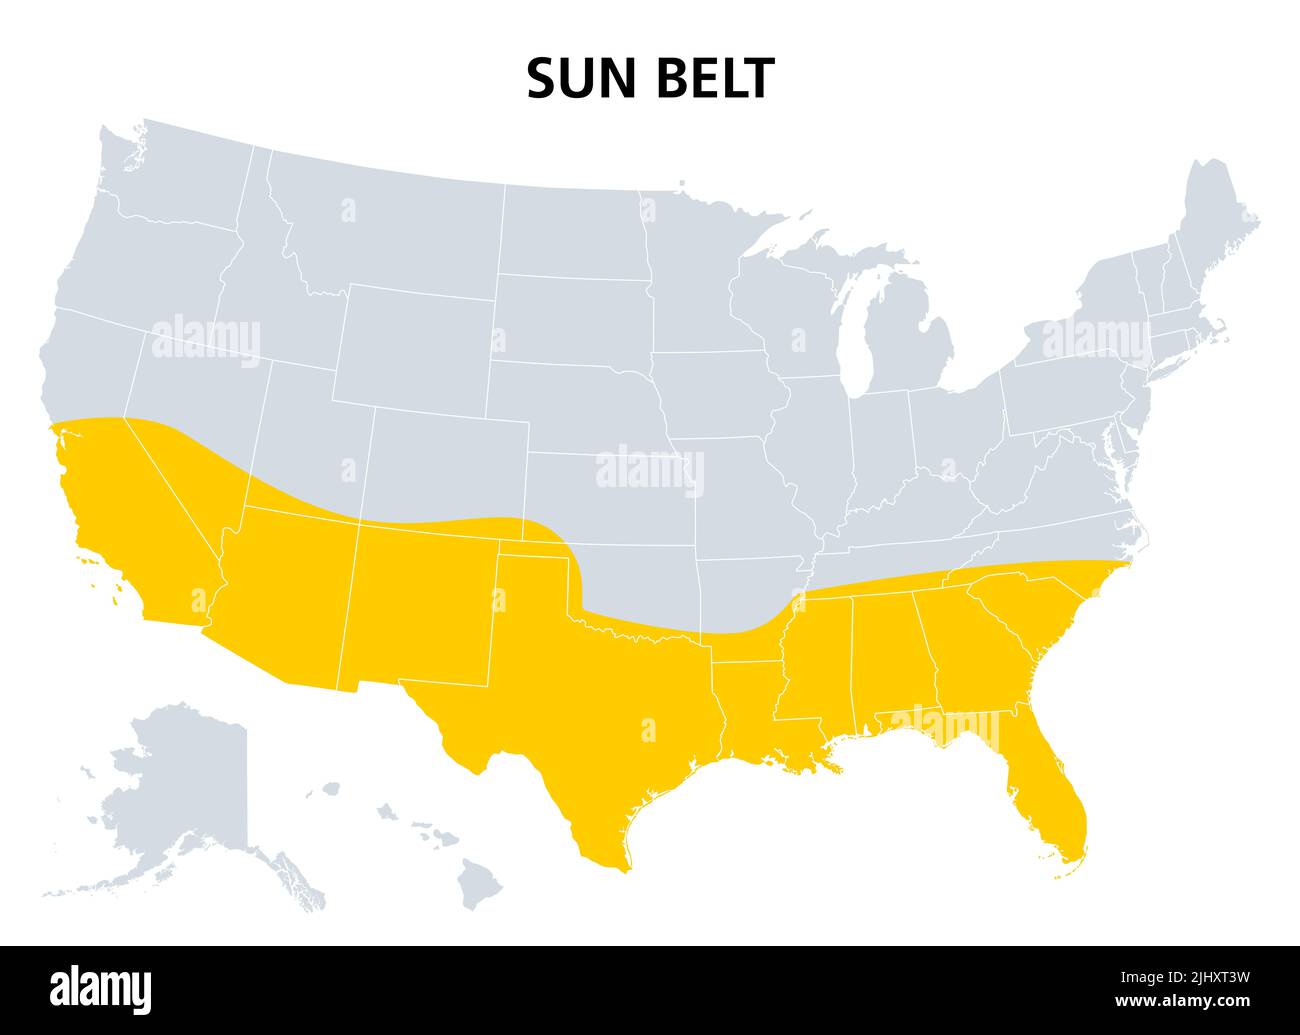 Sonnengürtel der Vereinigten Staaten, politische Landkarte. Region mit Wüstenklima, subtropischem und tropischem Klima, die die südlichsten Staaten umfasst. Stockfoto